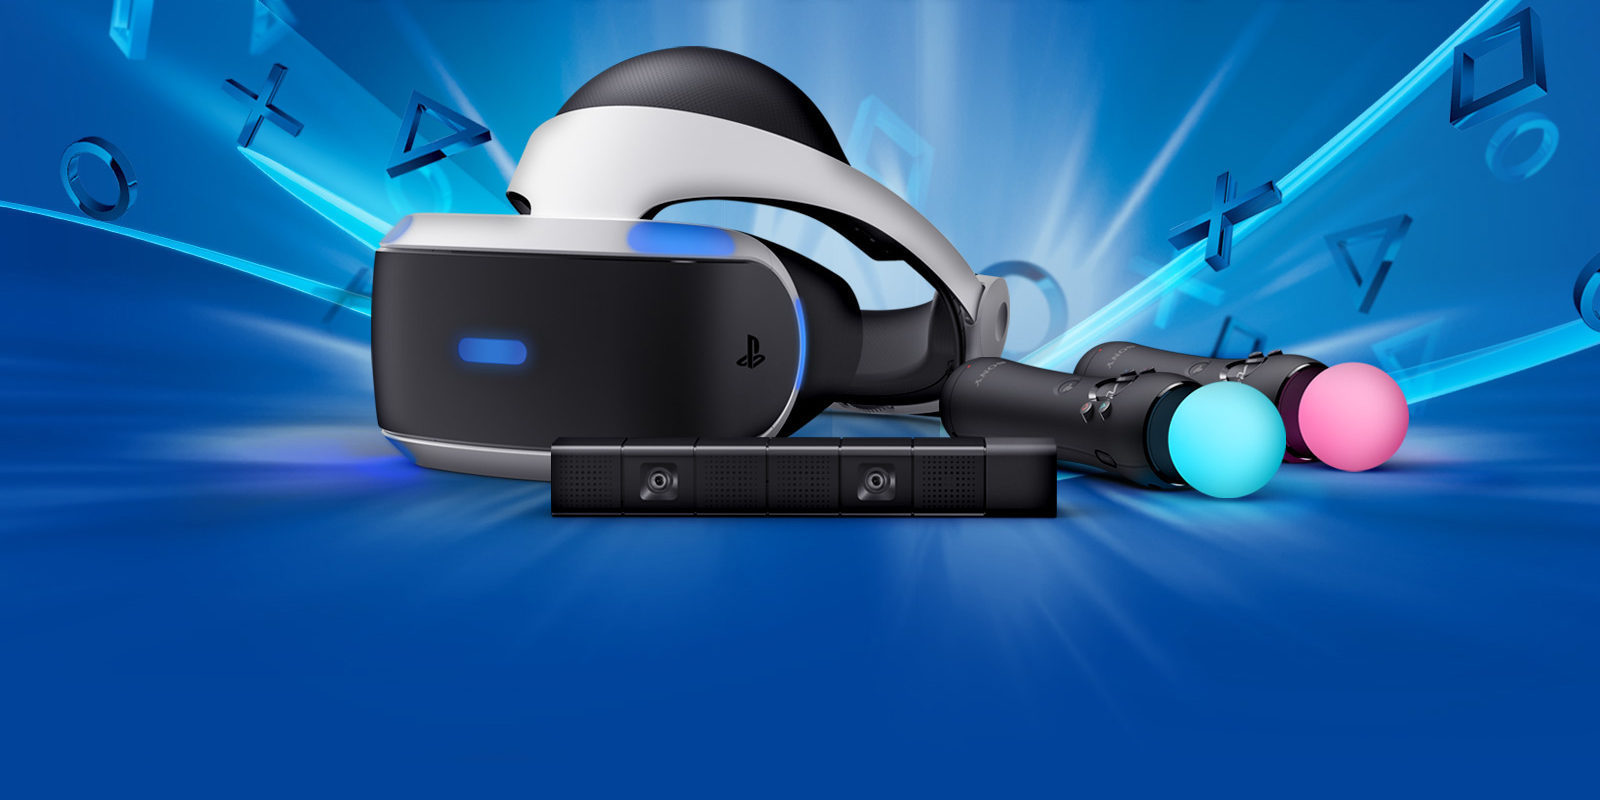 Recopilamos algunos de los primeros análisis de PlayStation VR